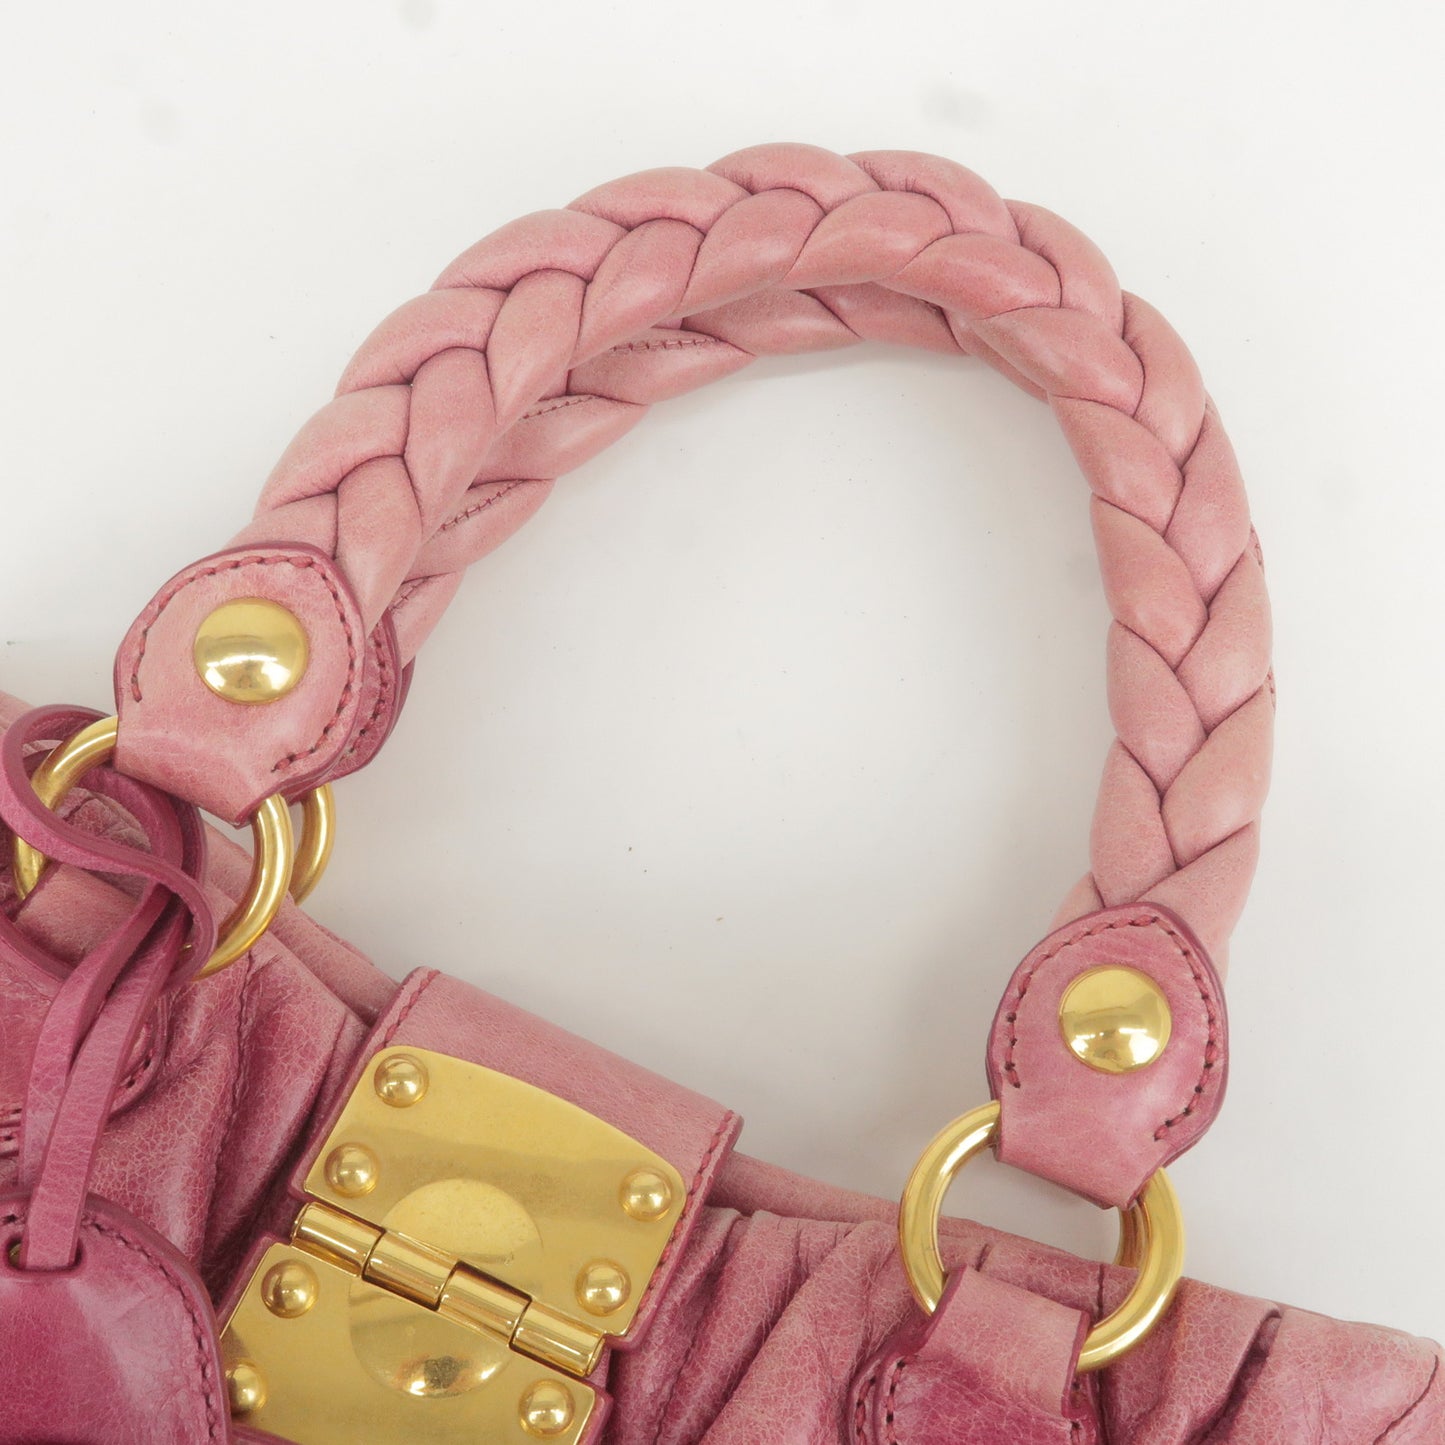 MIU MIU Matelasse Leather 2Way Bag Hand Bag Shoulder Bag Pink